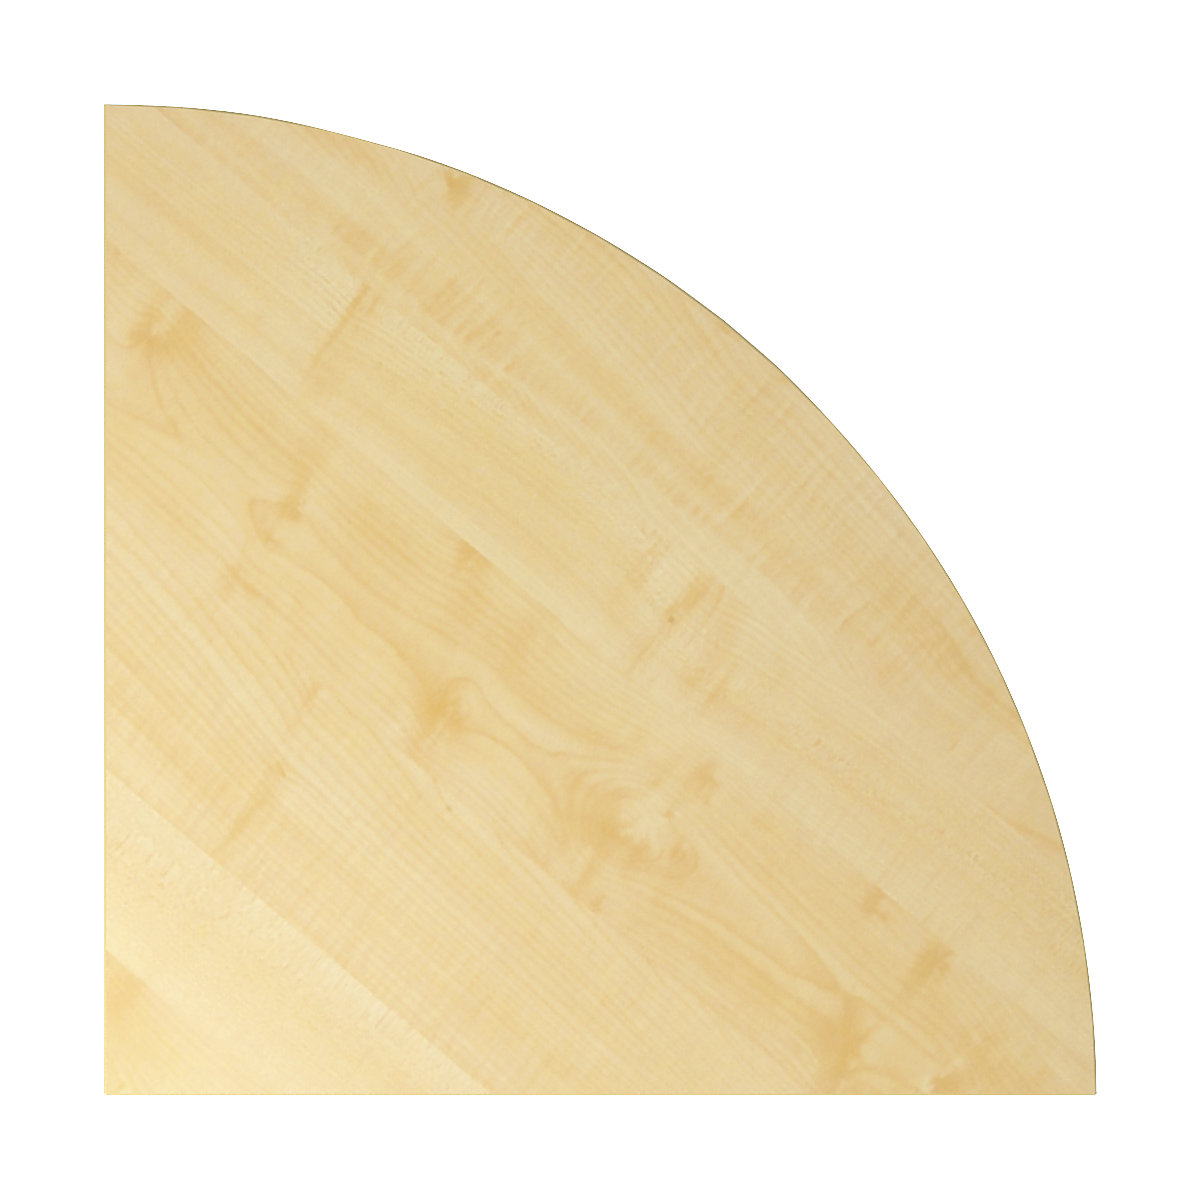 Verbindingsblad VERA-ZWO, b x d = 800 x 800 mm, kwartcirkel, ahornhoutdecor-6